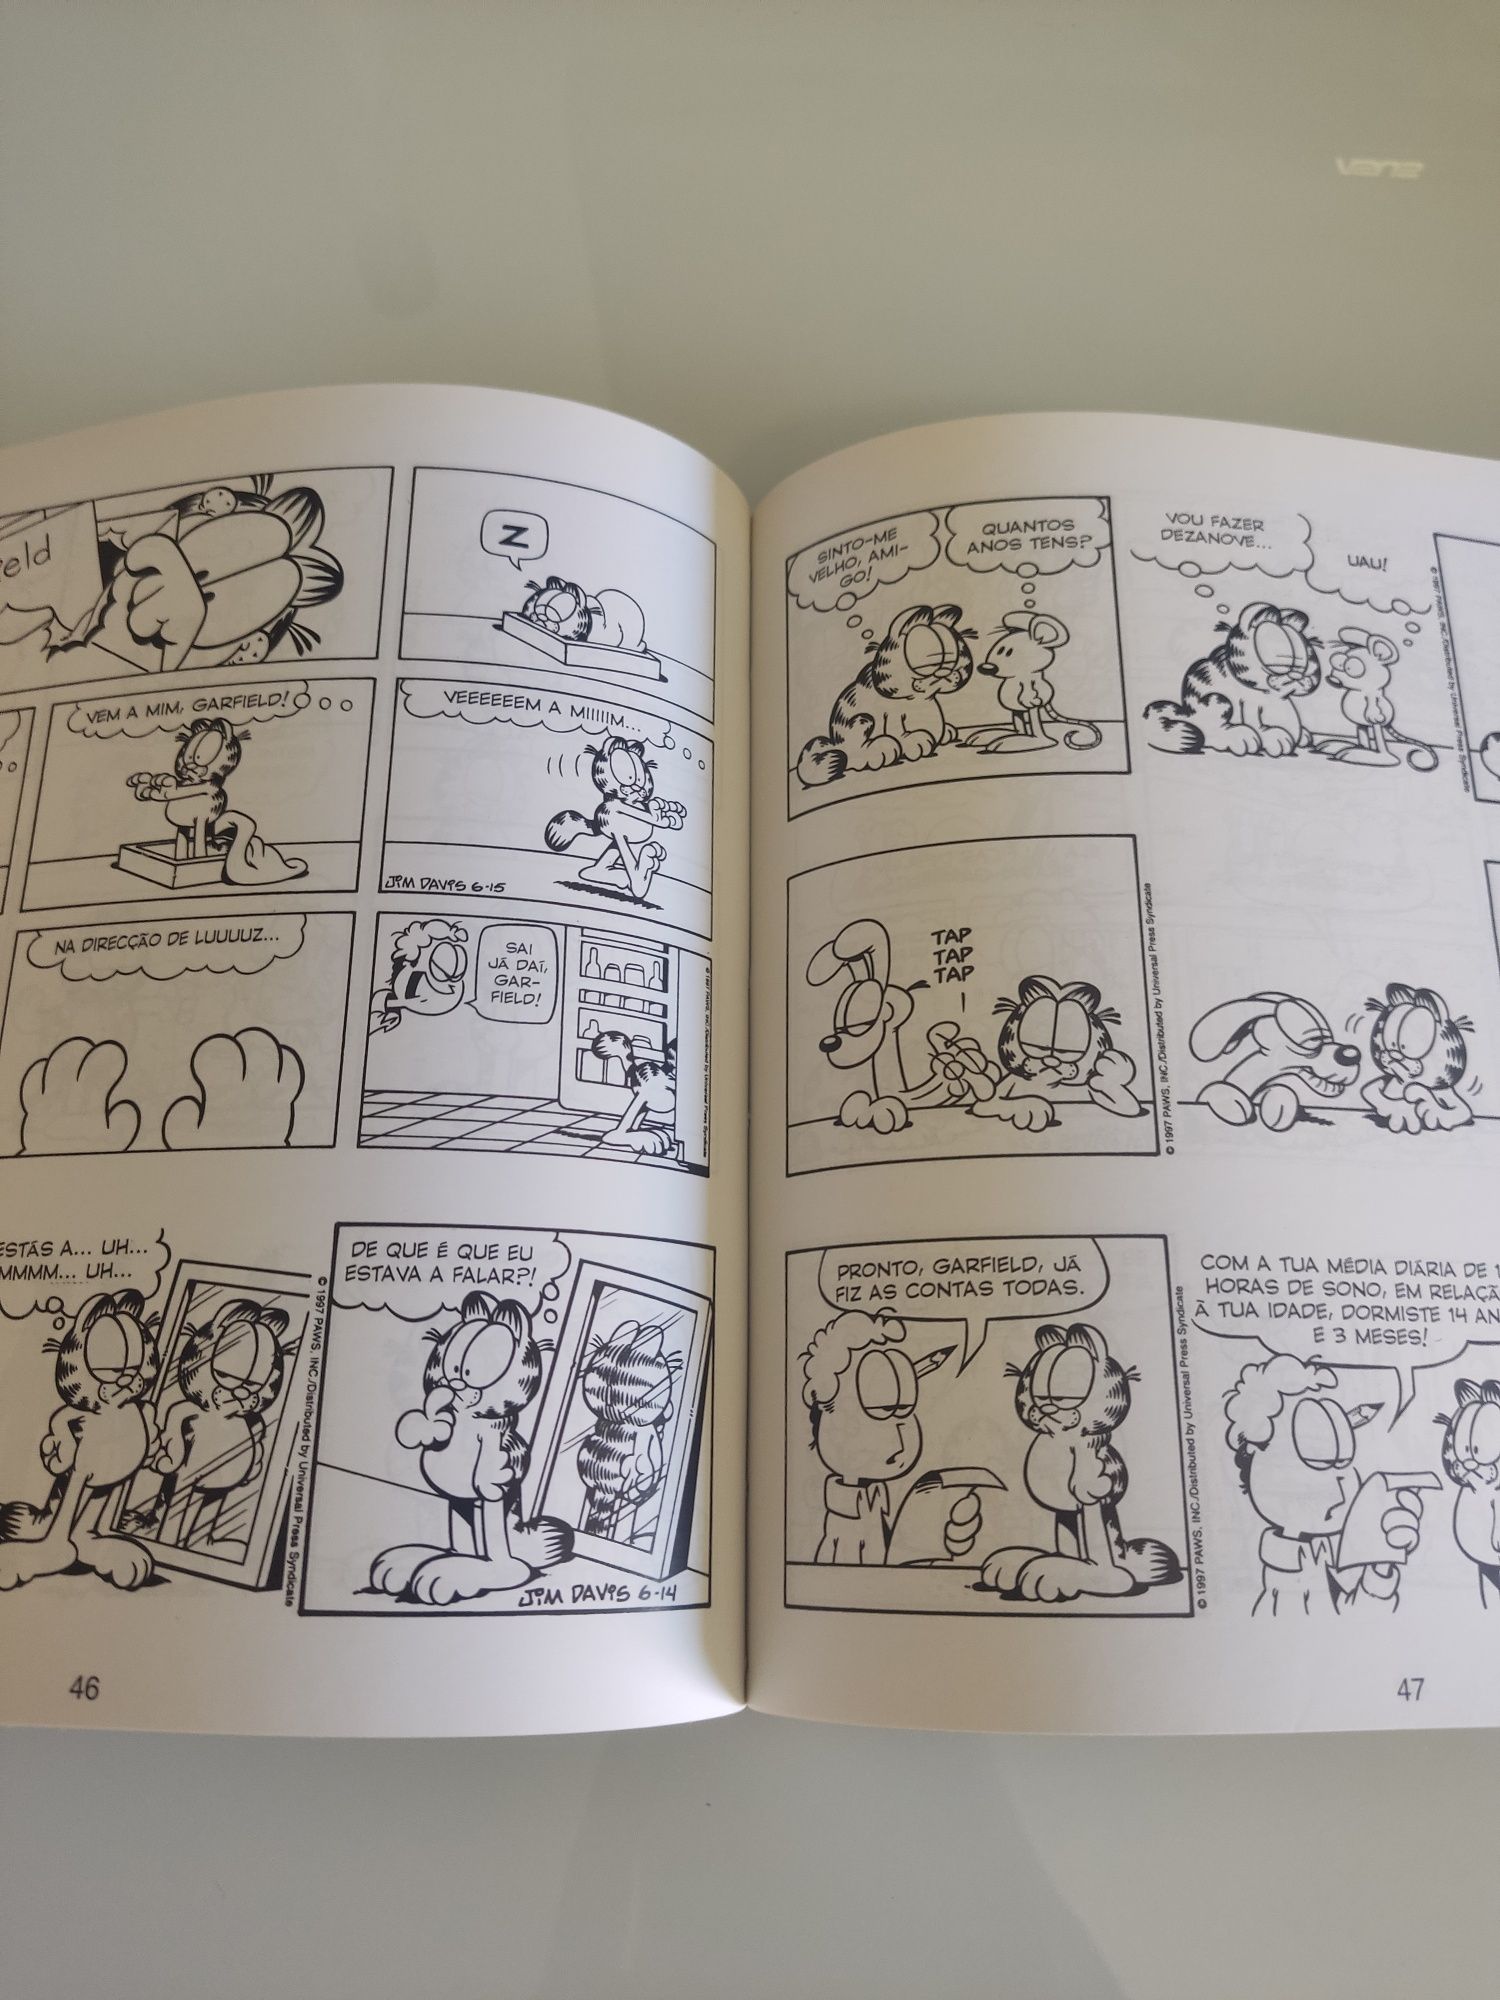 Livros Crianças - Garfield